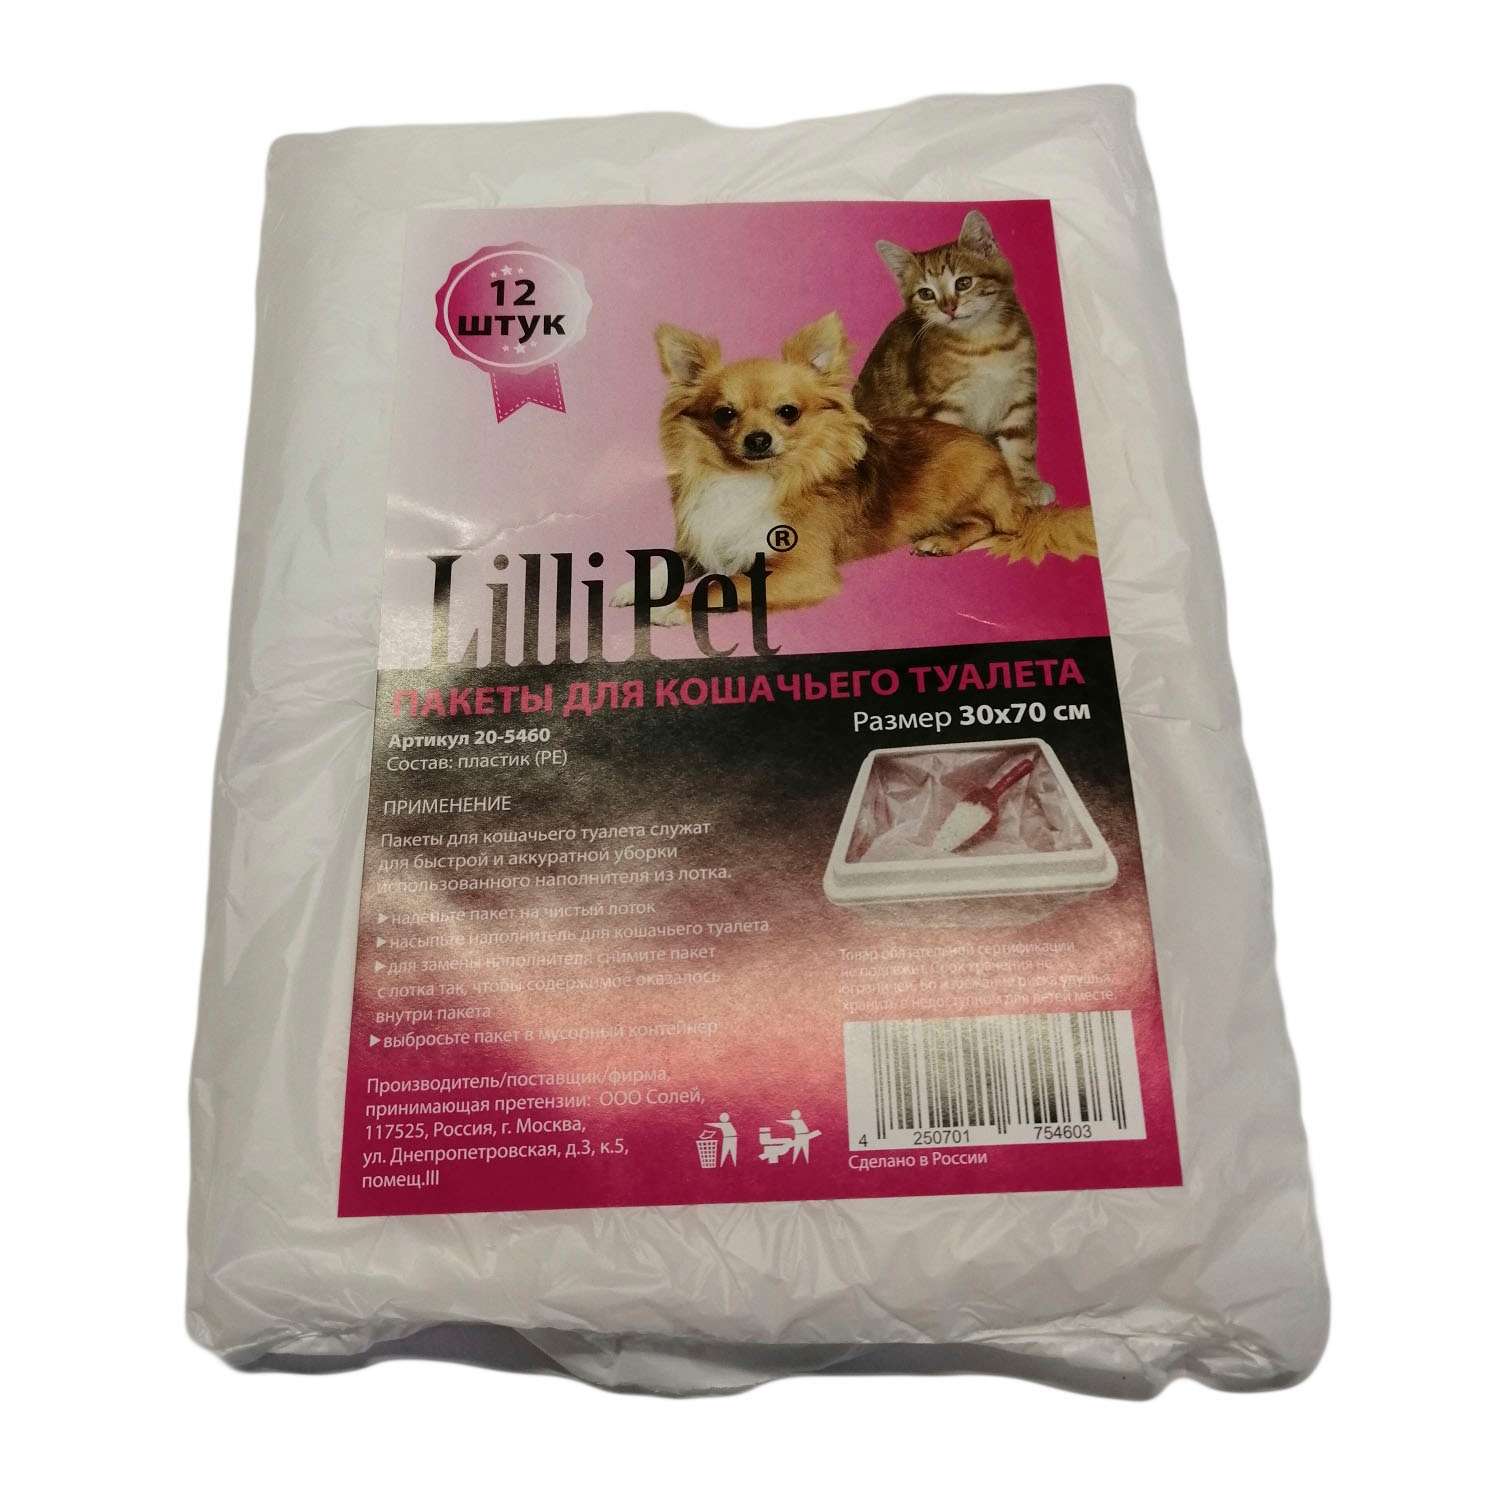 Пакеты для кошачьего туалета Lilli Pet 12шт 20-5460 - фото 1